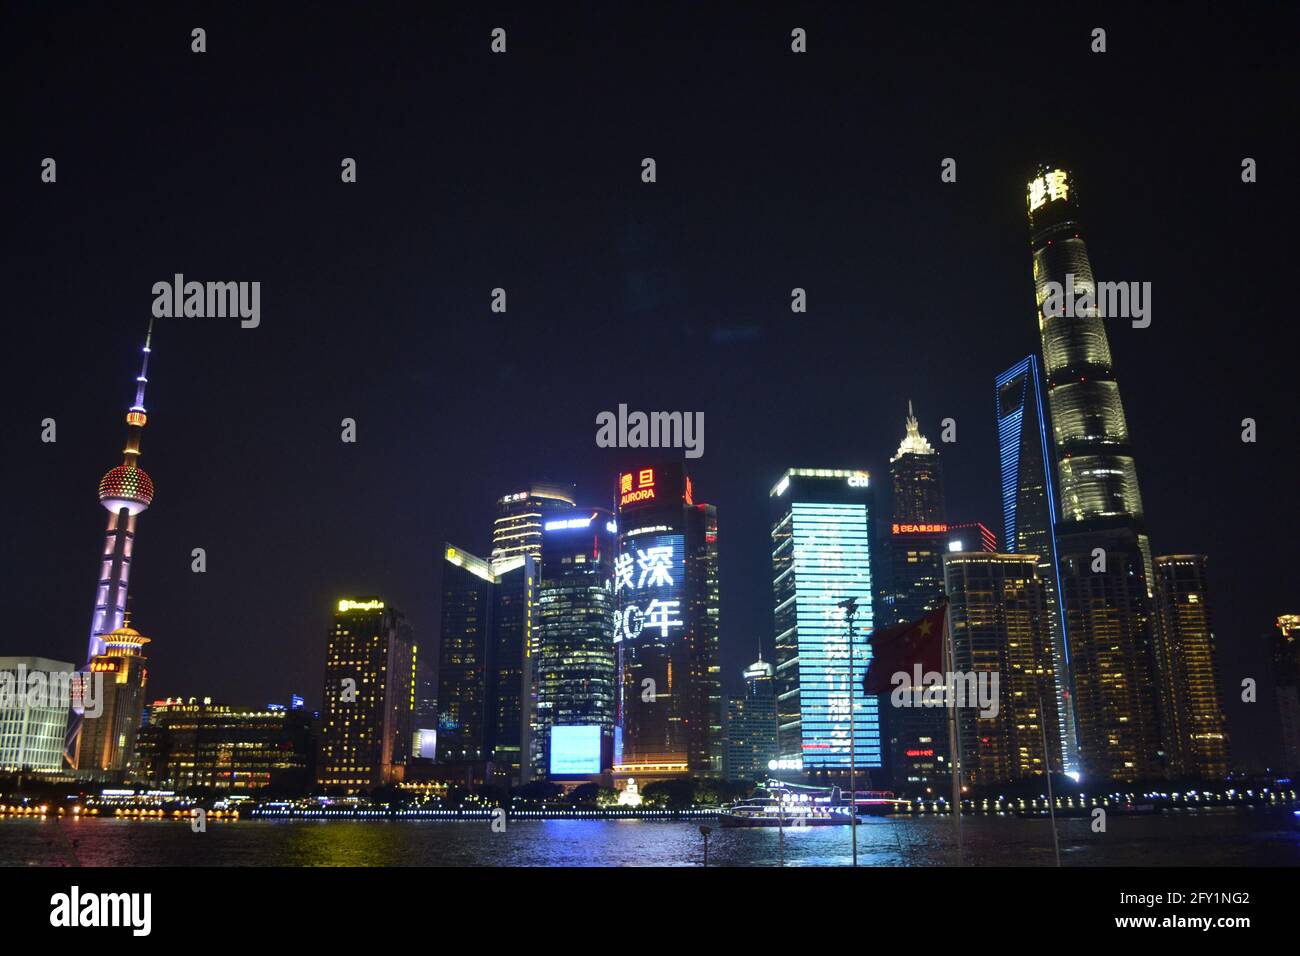 Die Wolkenkratzer der Pudong-Region in Shanghai, China, erleuchten am Abend für Tausende von Touristen, die jeden Tag strömen, um sie zu beobachten Stockfoto